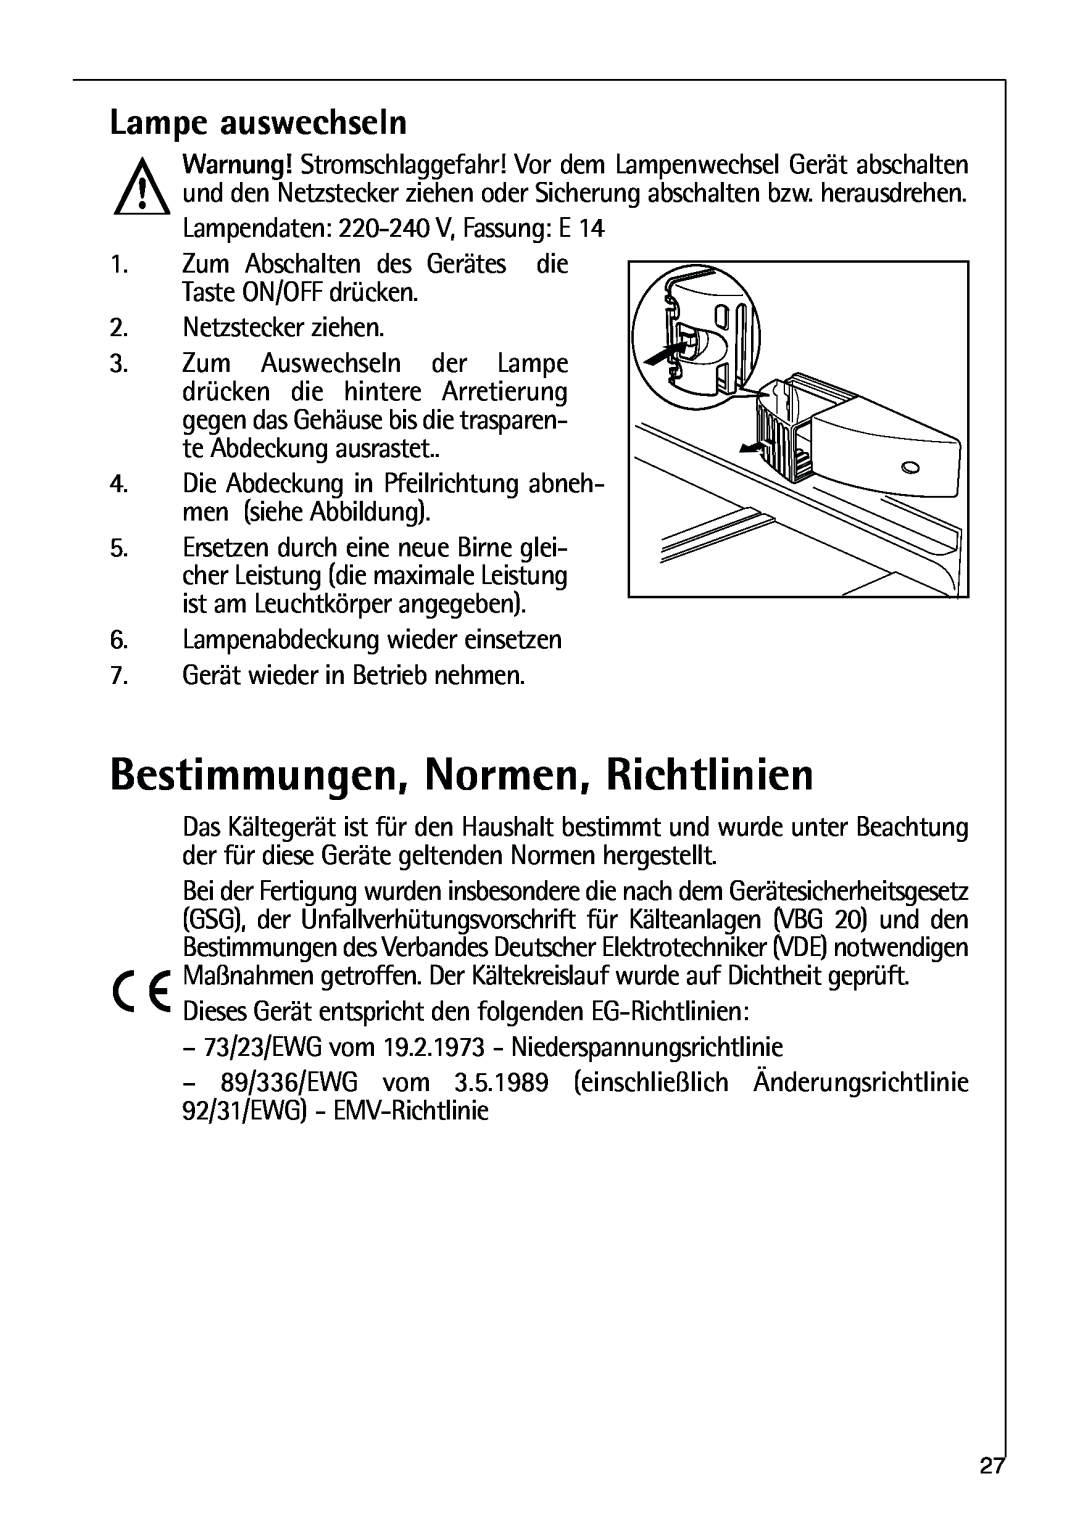 AEG 80318-5 KG user manual Bestimmungen, Normen, Richtlinien, Lampe auswechseln 